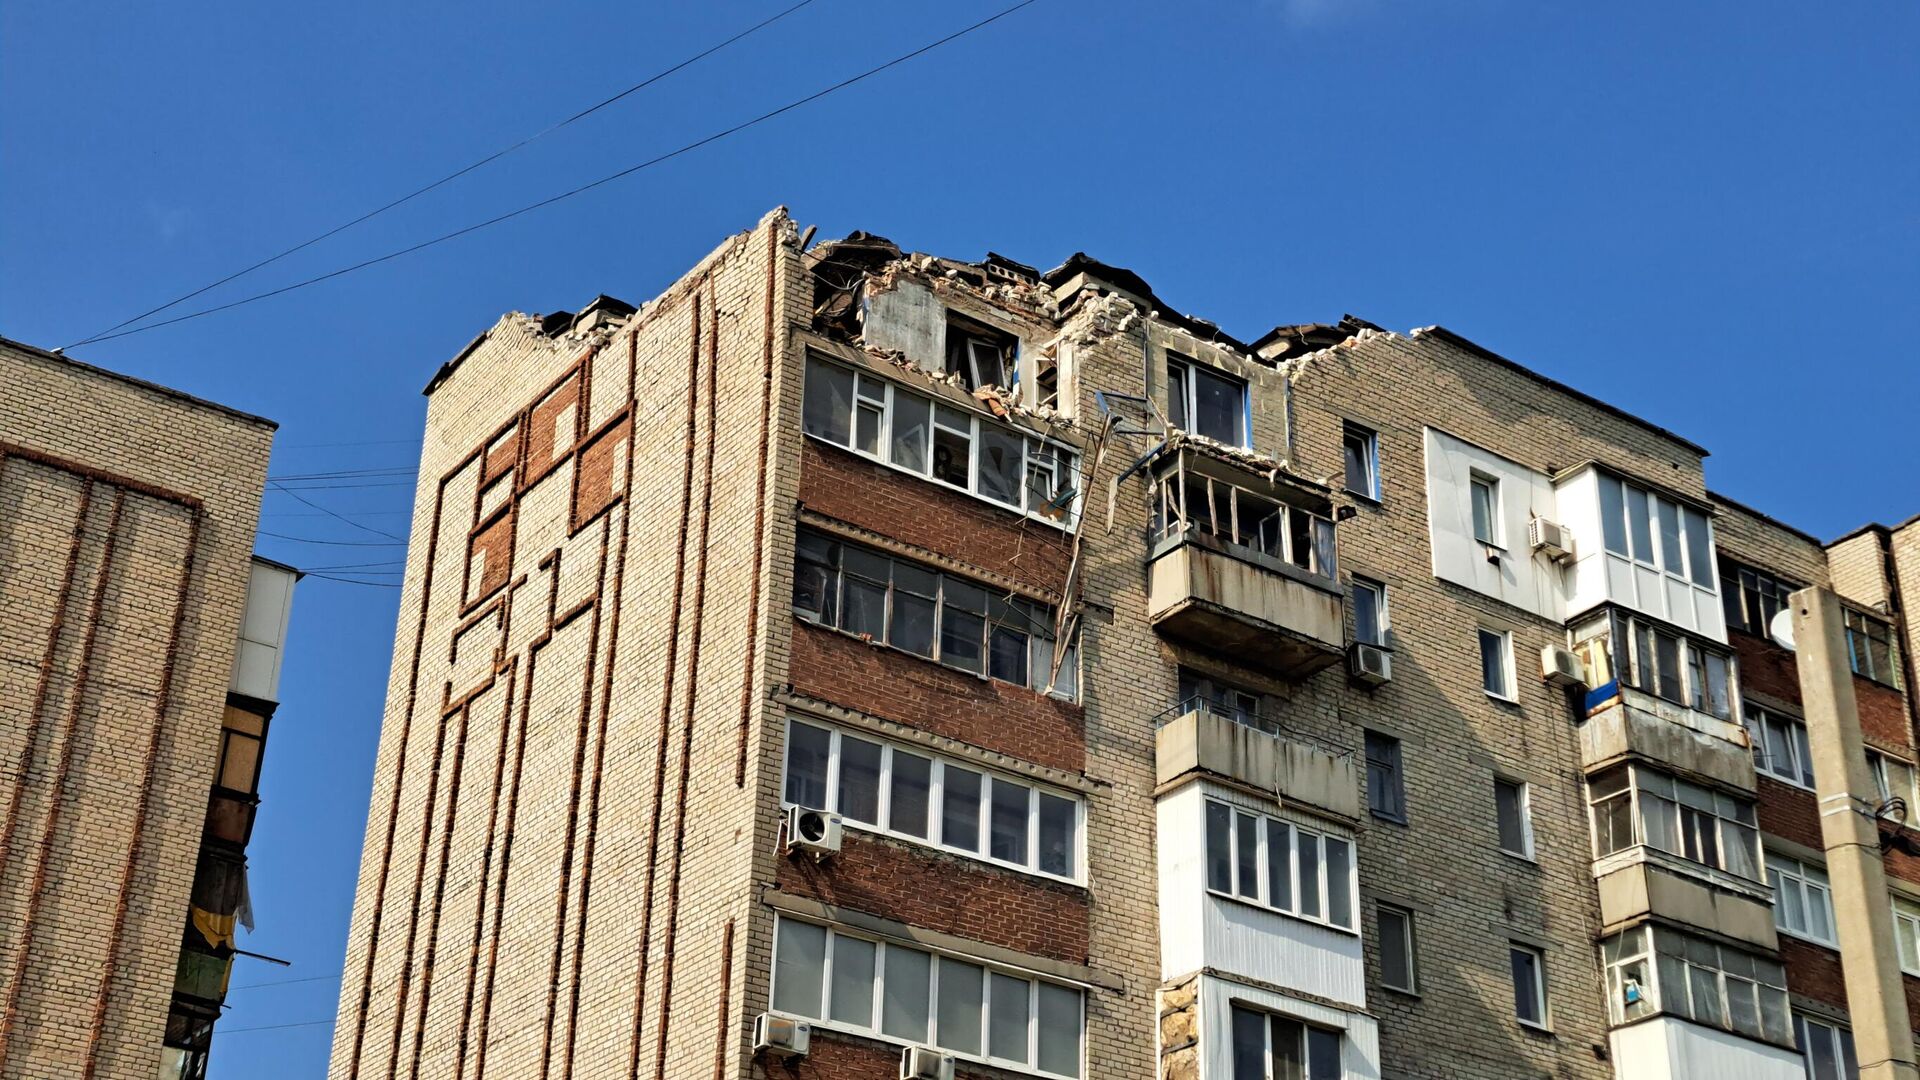 Многоквартирный дом, поврежденный в результате обстрела со стороны ВСУ города Ясиноватая - РИА Новости, 1920, 24.05.2023